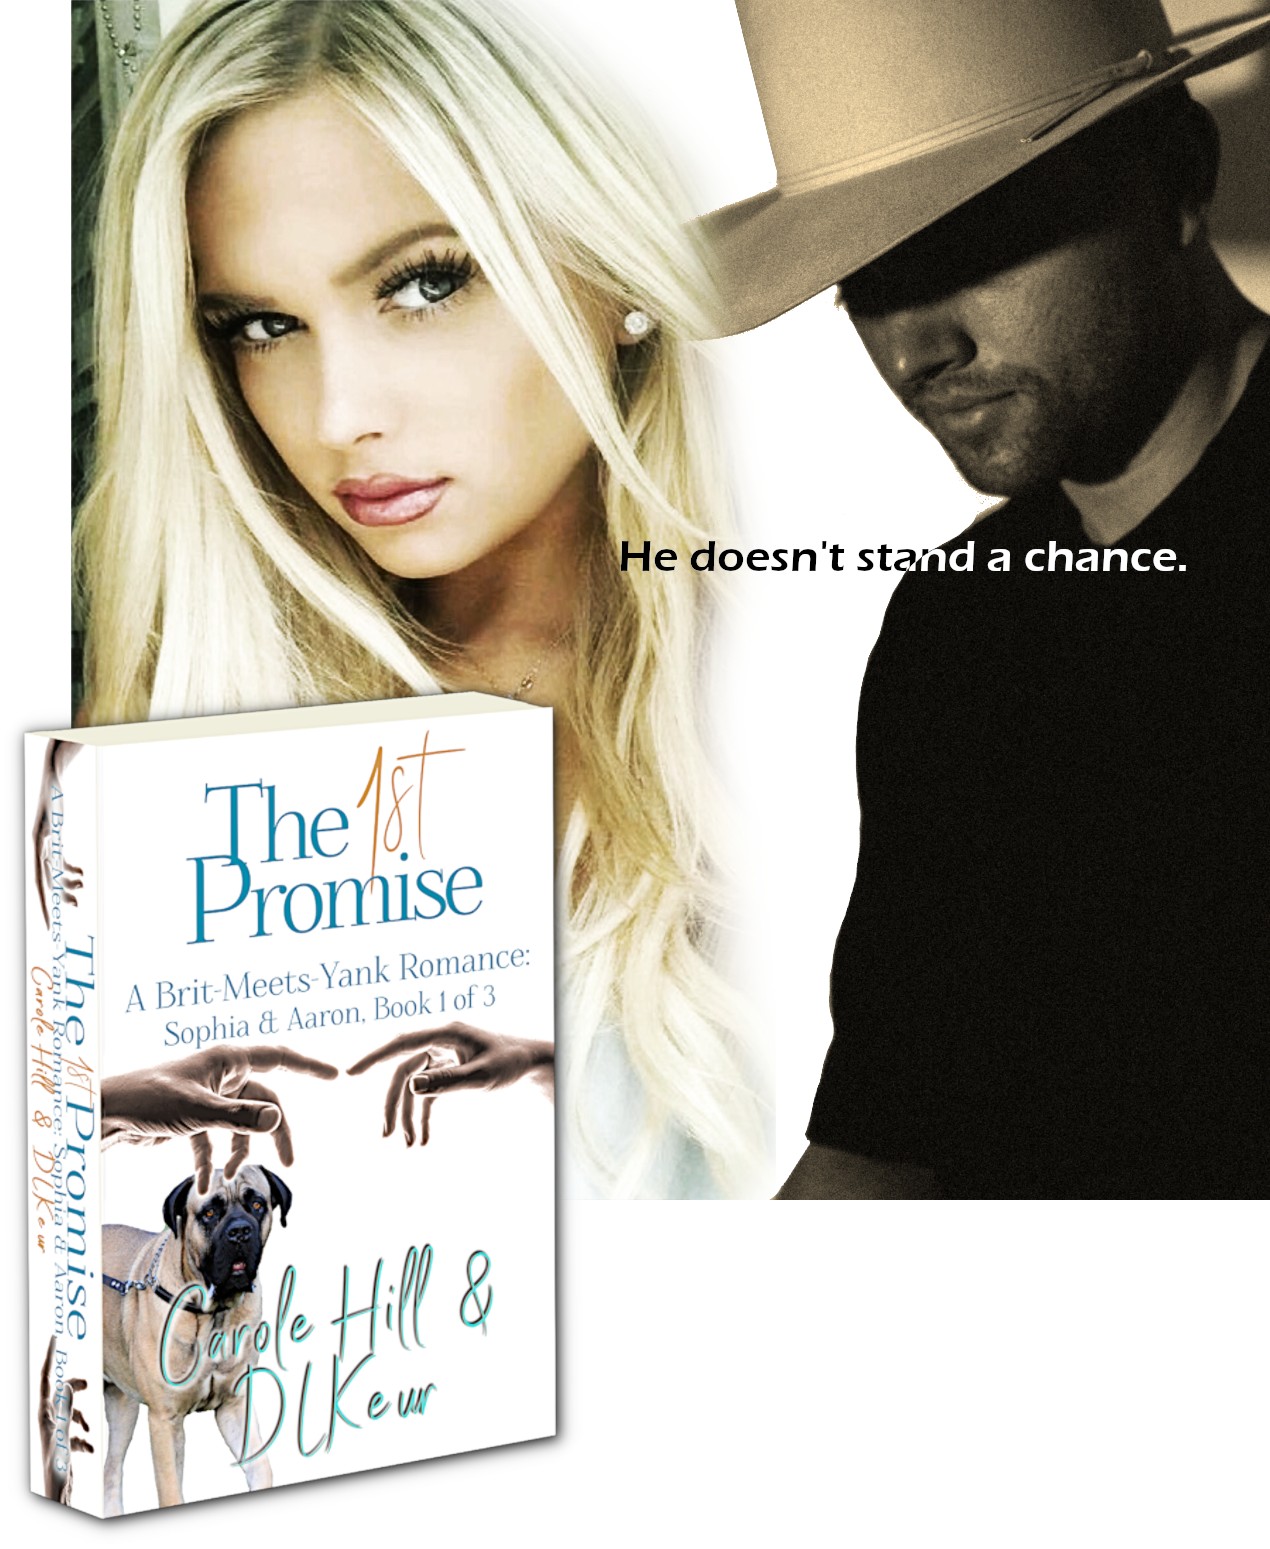 The 1st Promise. a novel